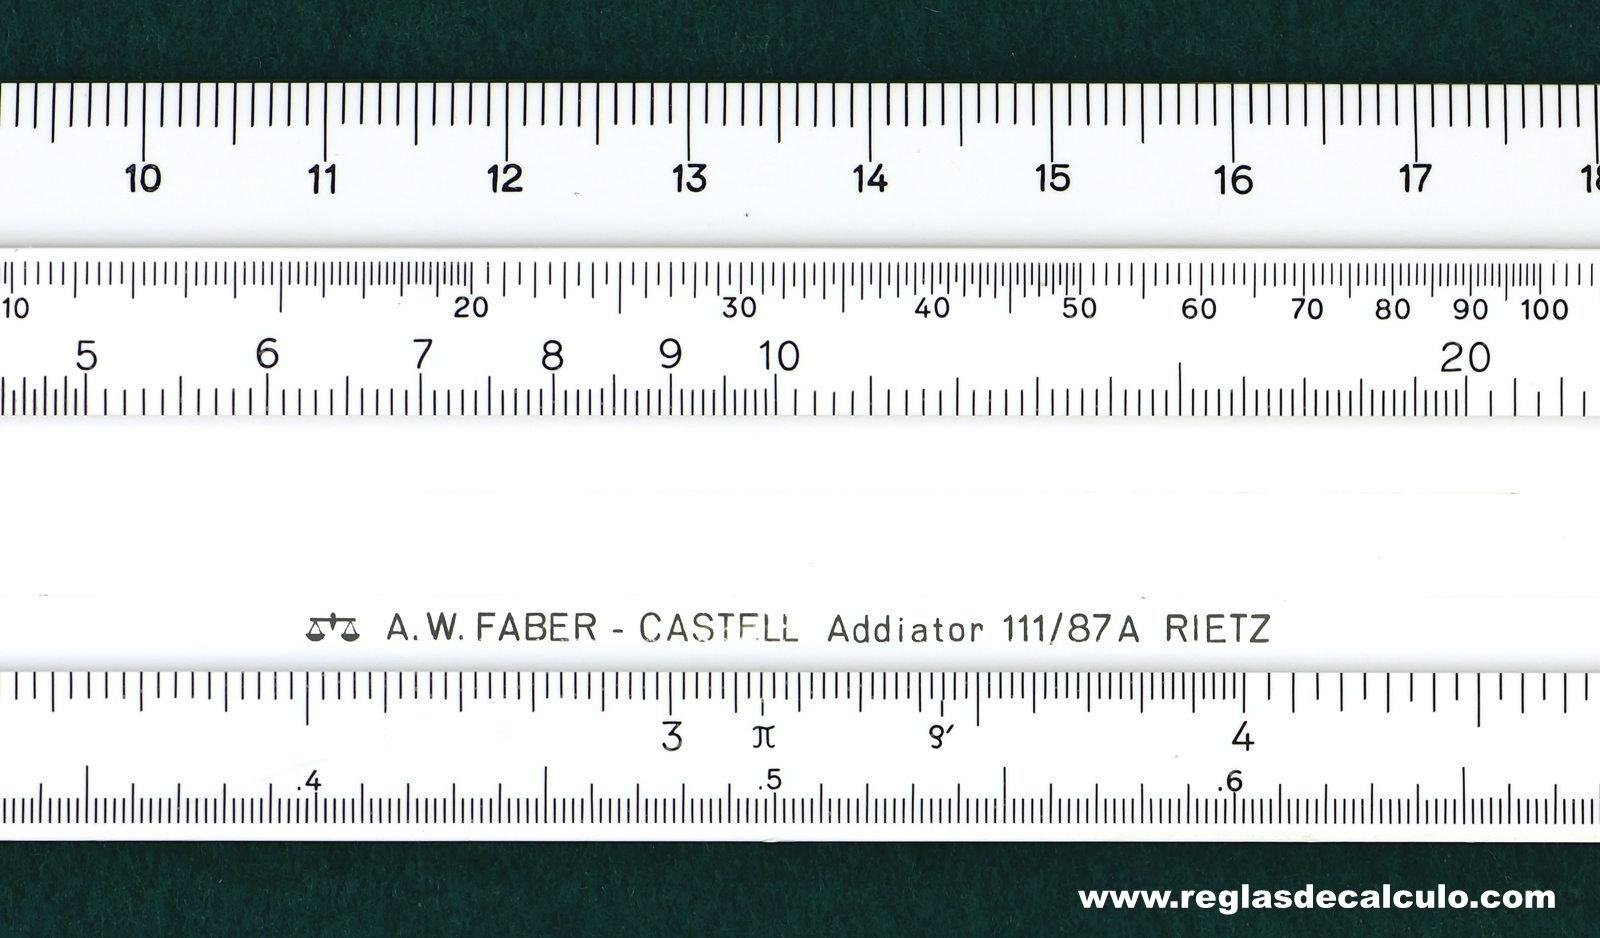 Faber Castell 111/87A Addiator Regla de Calculo Slide rule